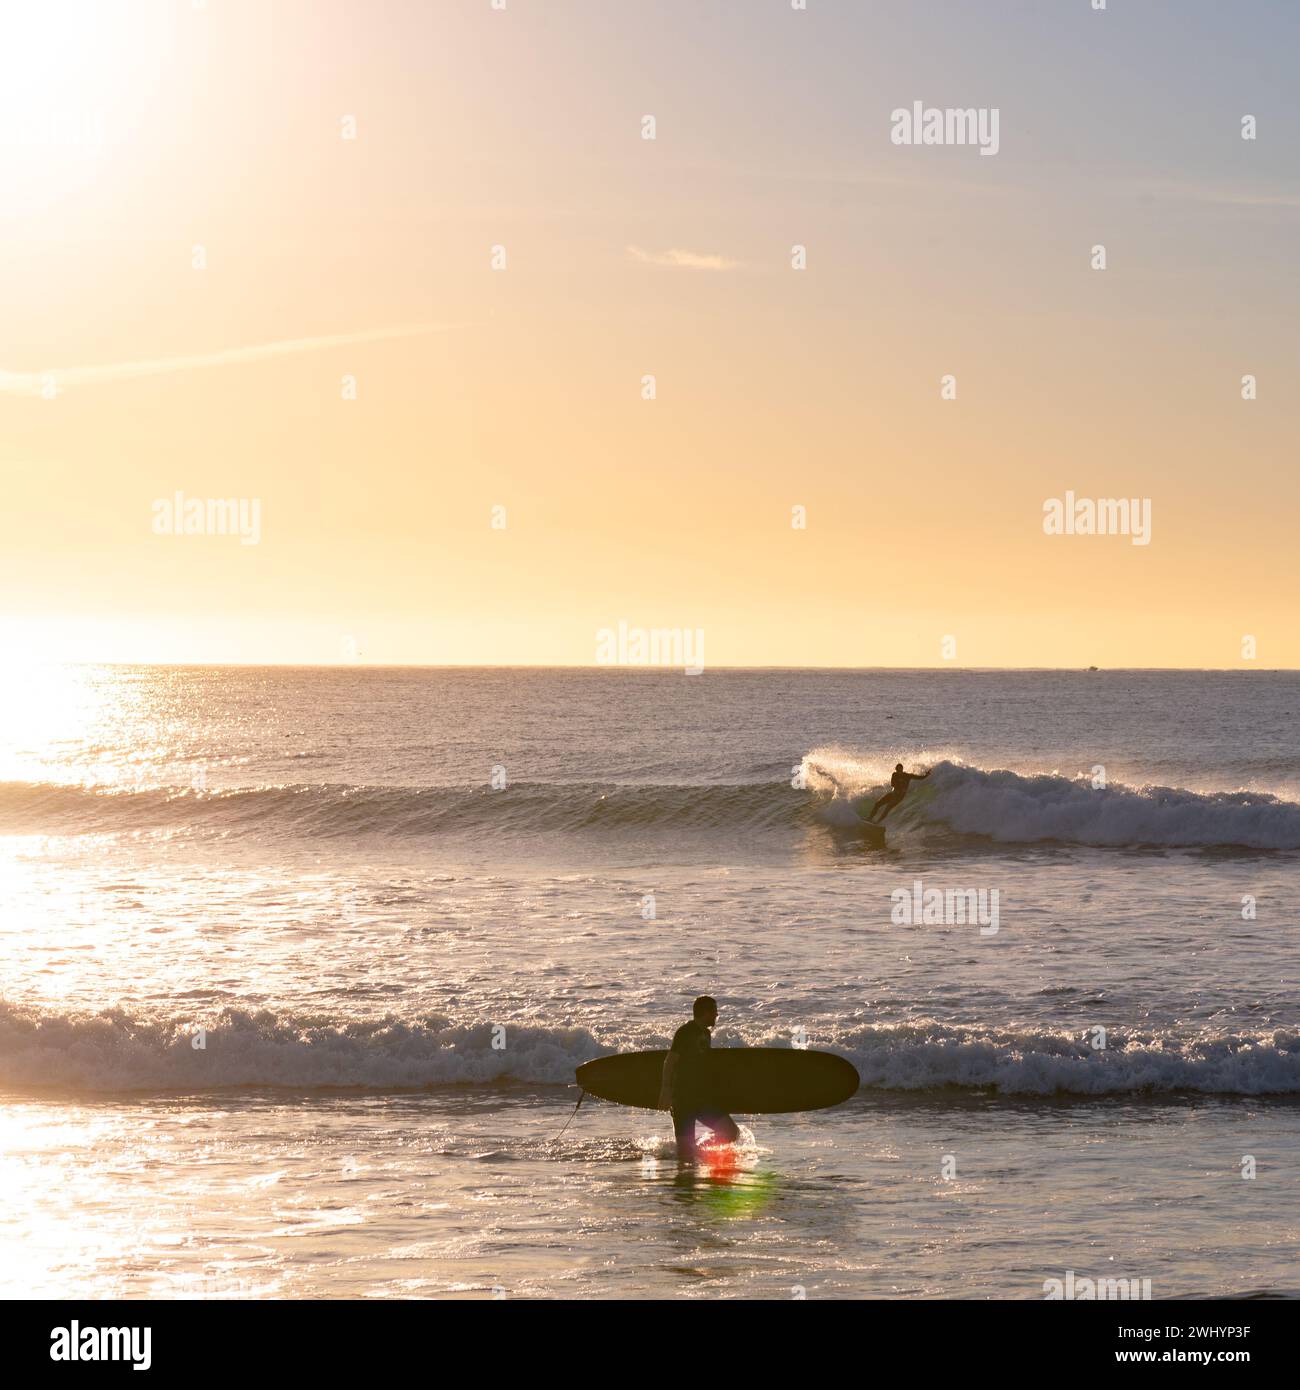 Personnes, surf, Campus point, UCSB, Early Morning Light, culture du surf en Californie, belles vagues, style de vie côtier Banque D'Images